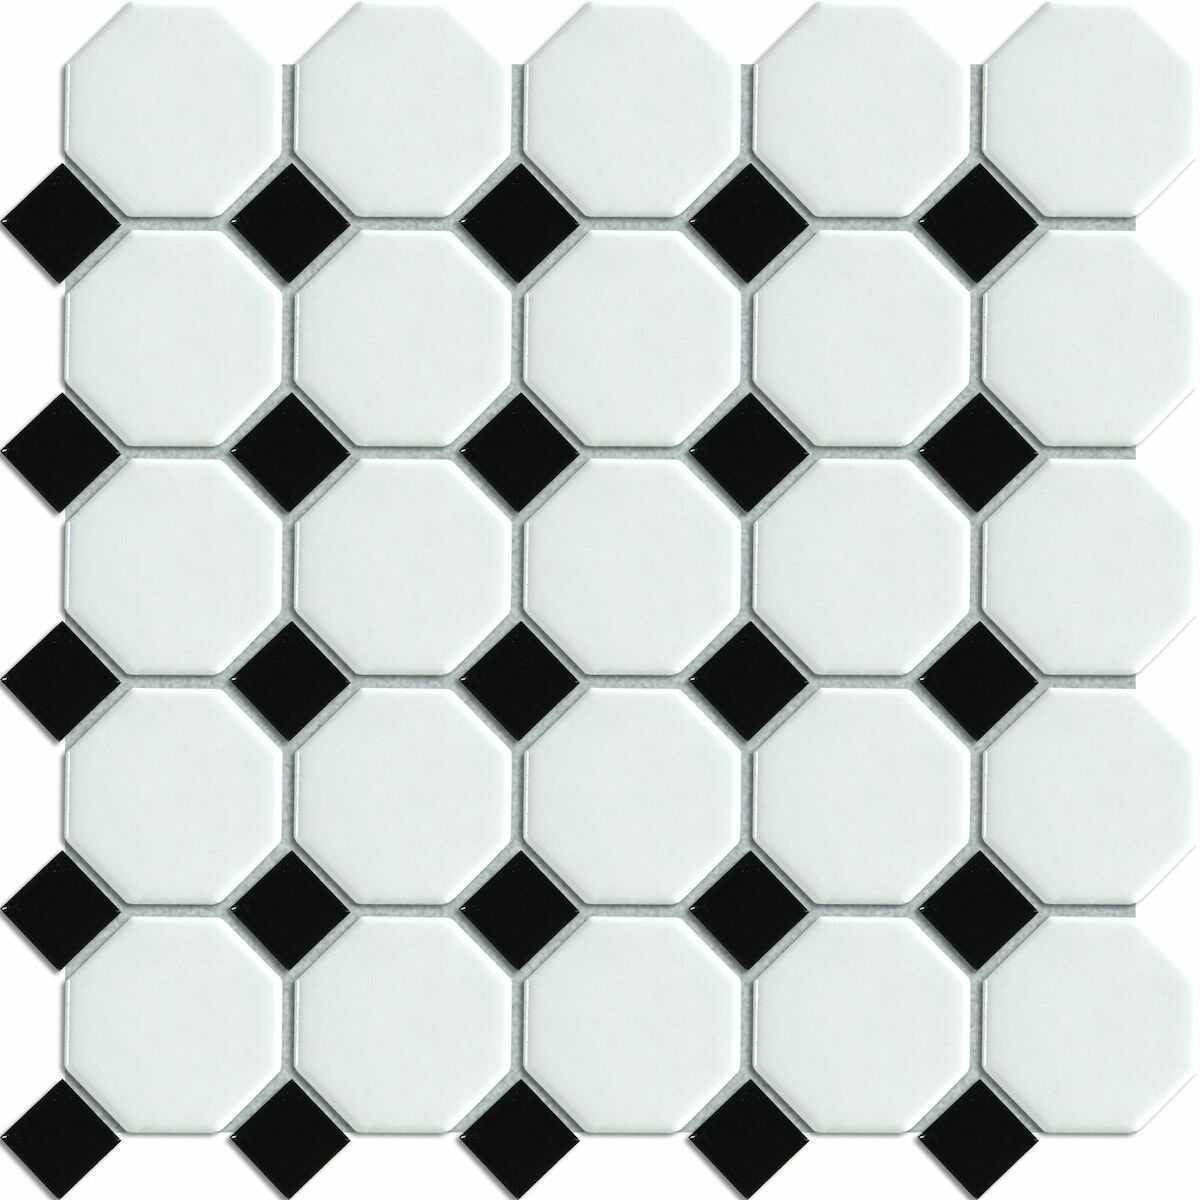 Keramická mozaika Premium Mosaic mix černá/bílá 30x30 cm mat / lesk MOSOCTAGON Premium Mosaic